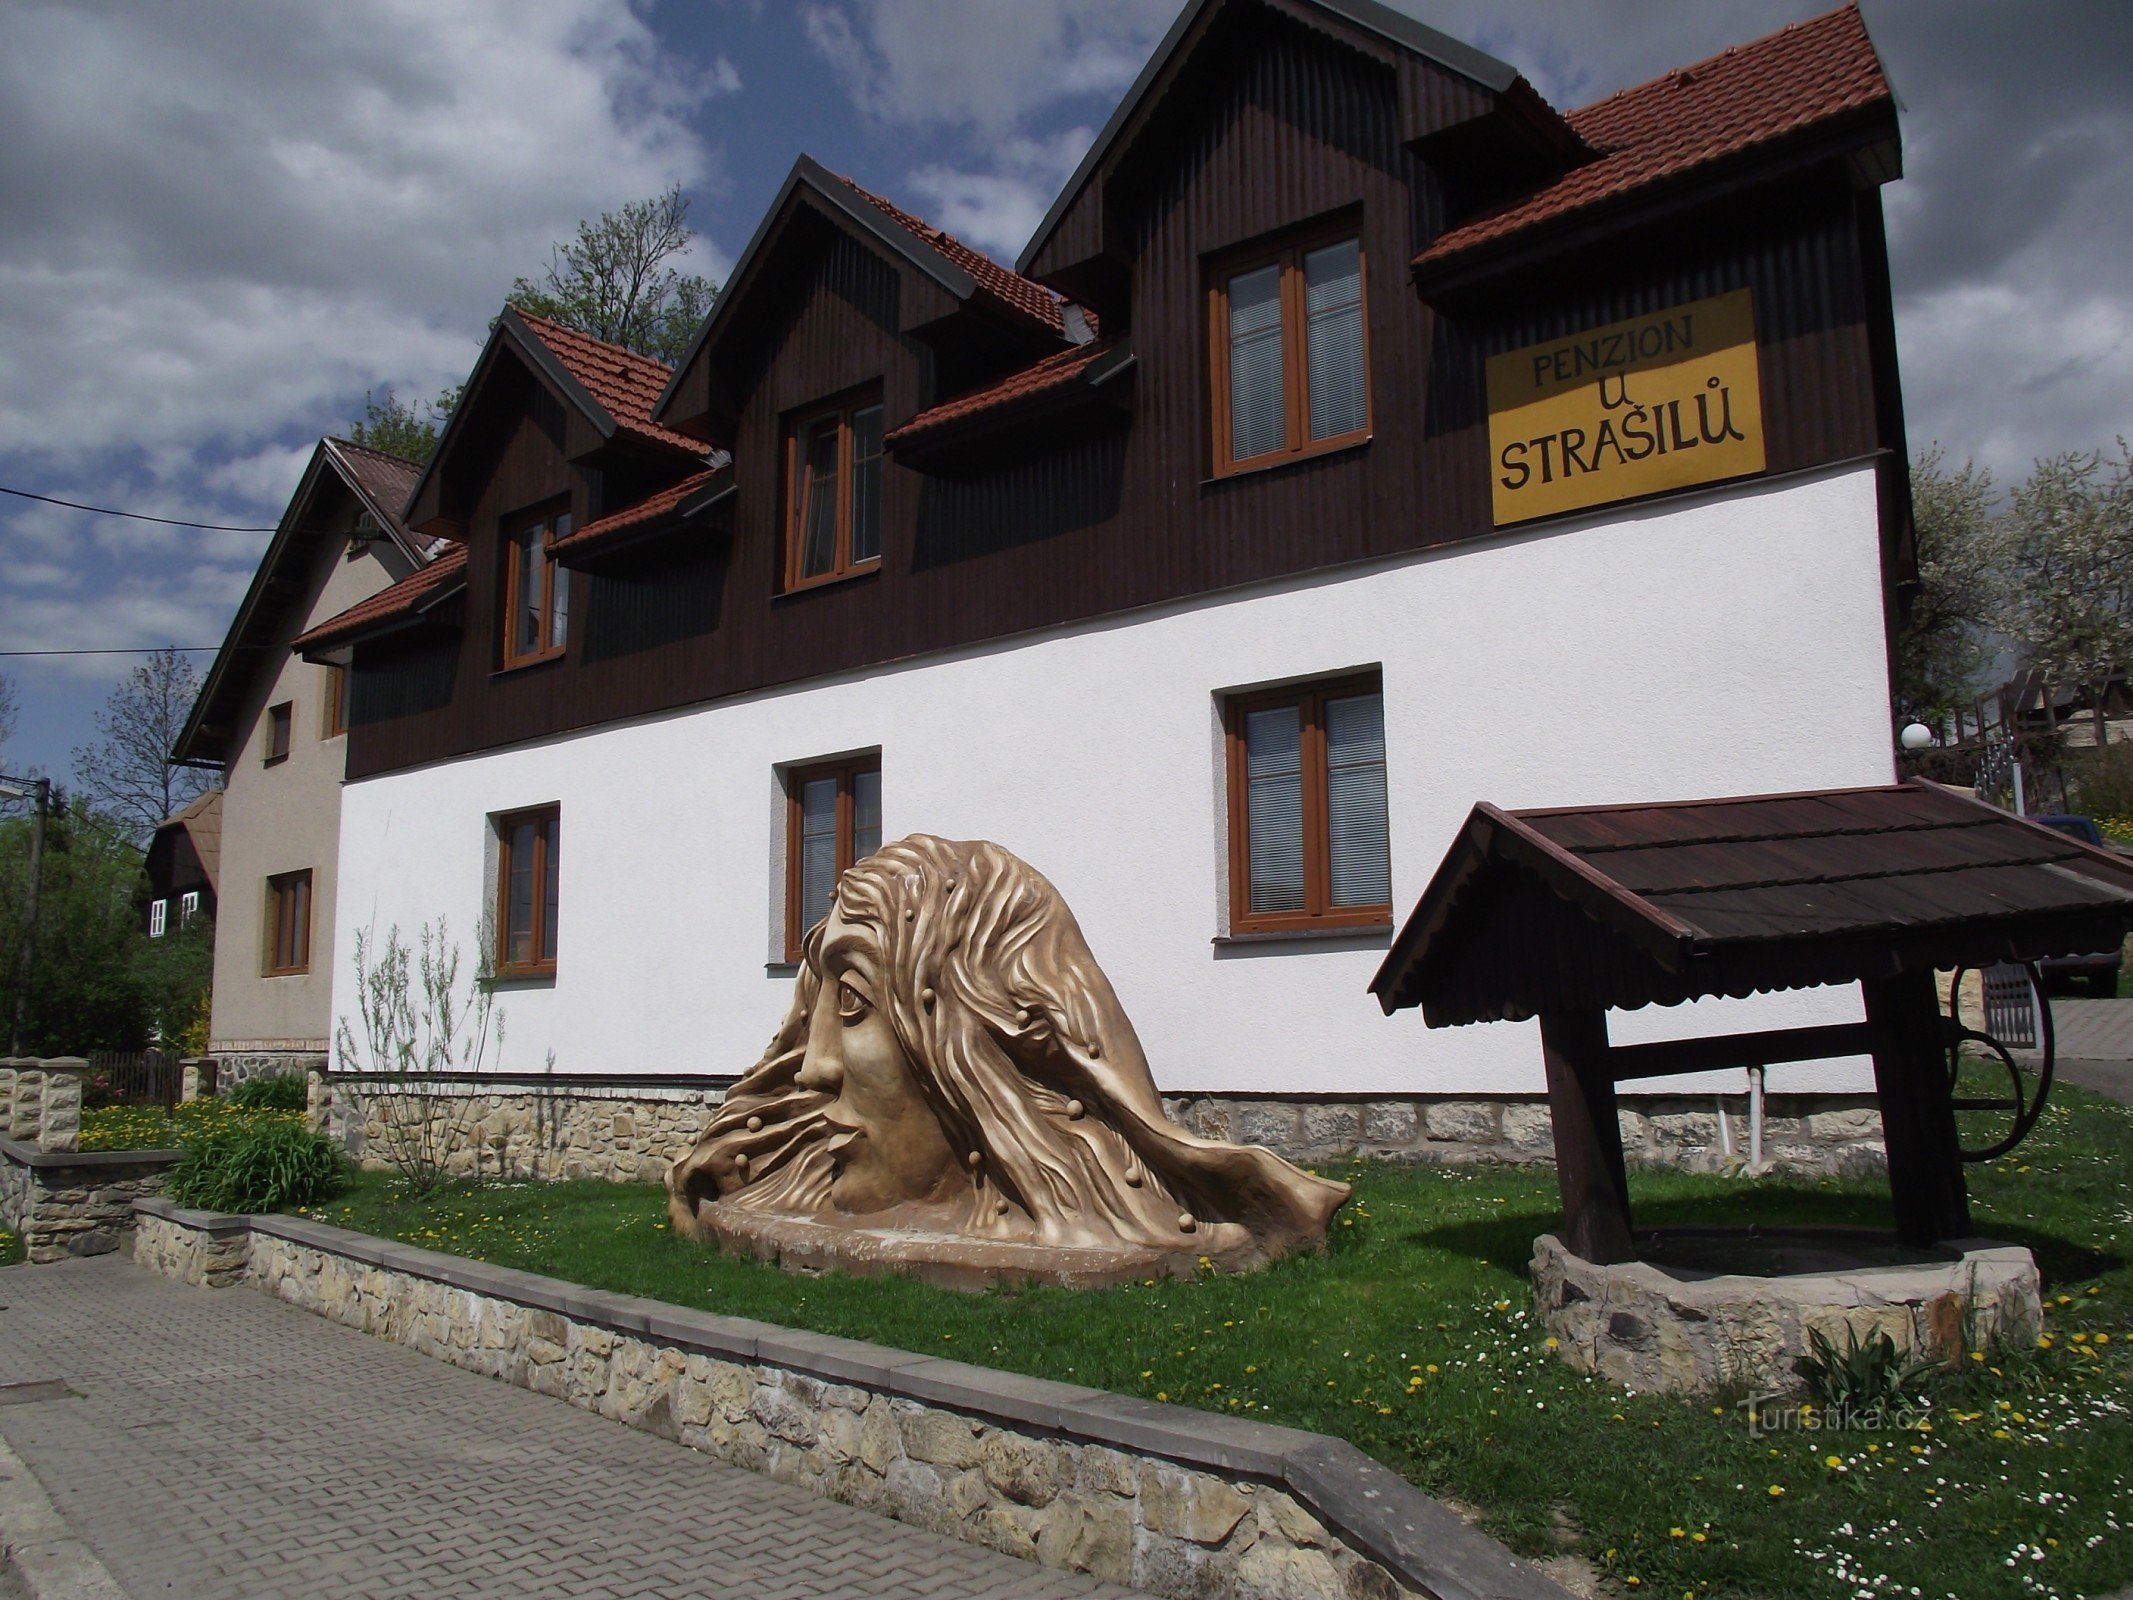 guesthouse U Strašilů with its decoration